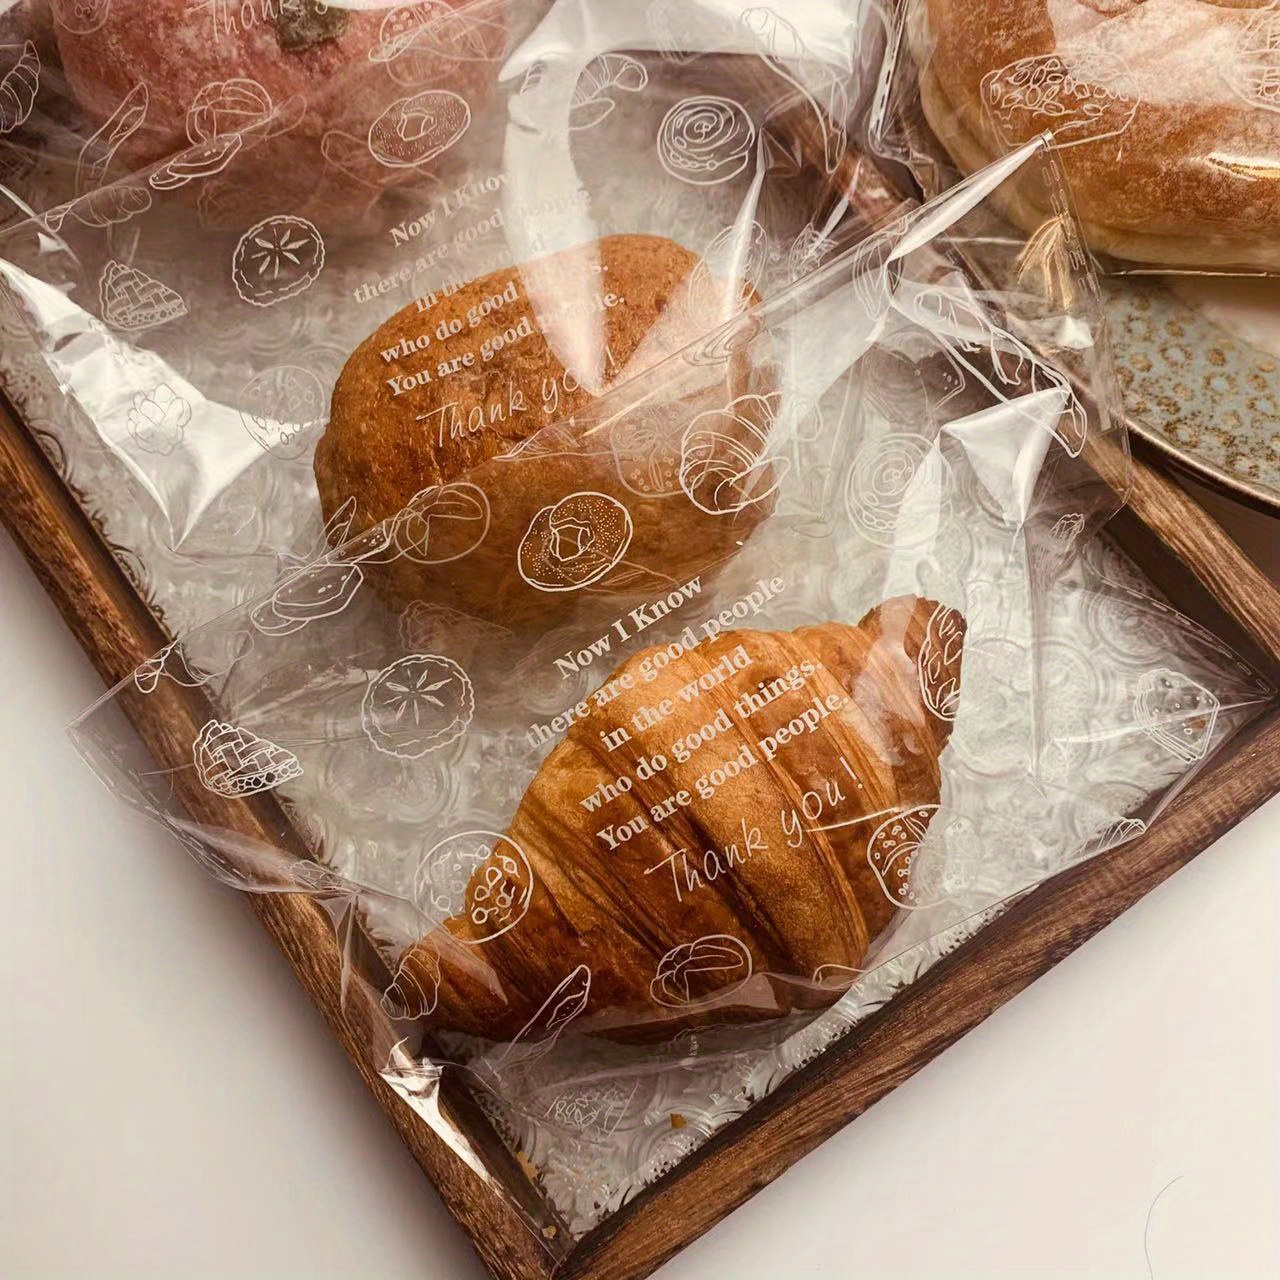 Bolsas de tela para pan, hechas a mano y reutilizables - La Sentipensante